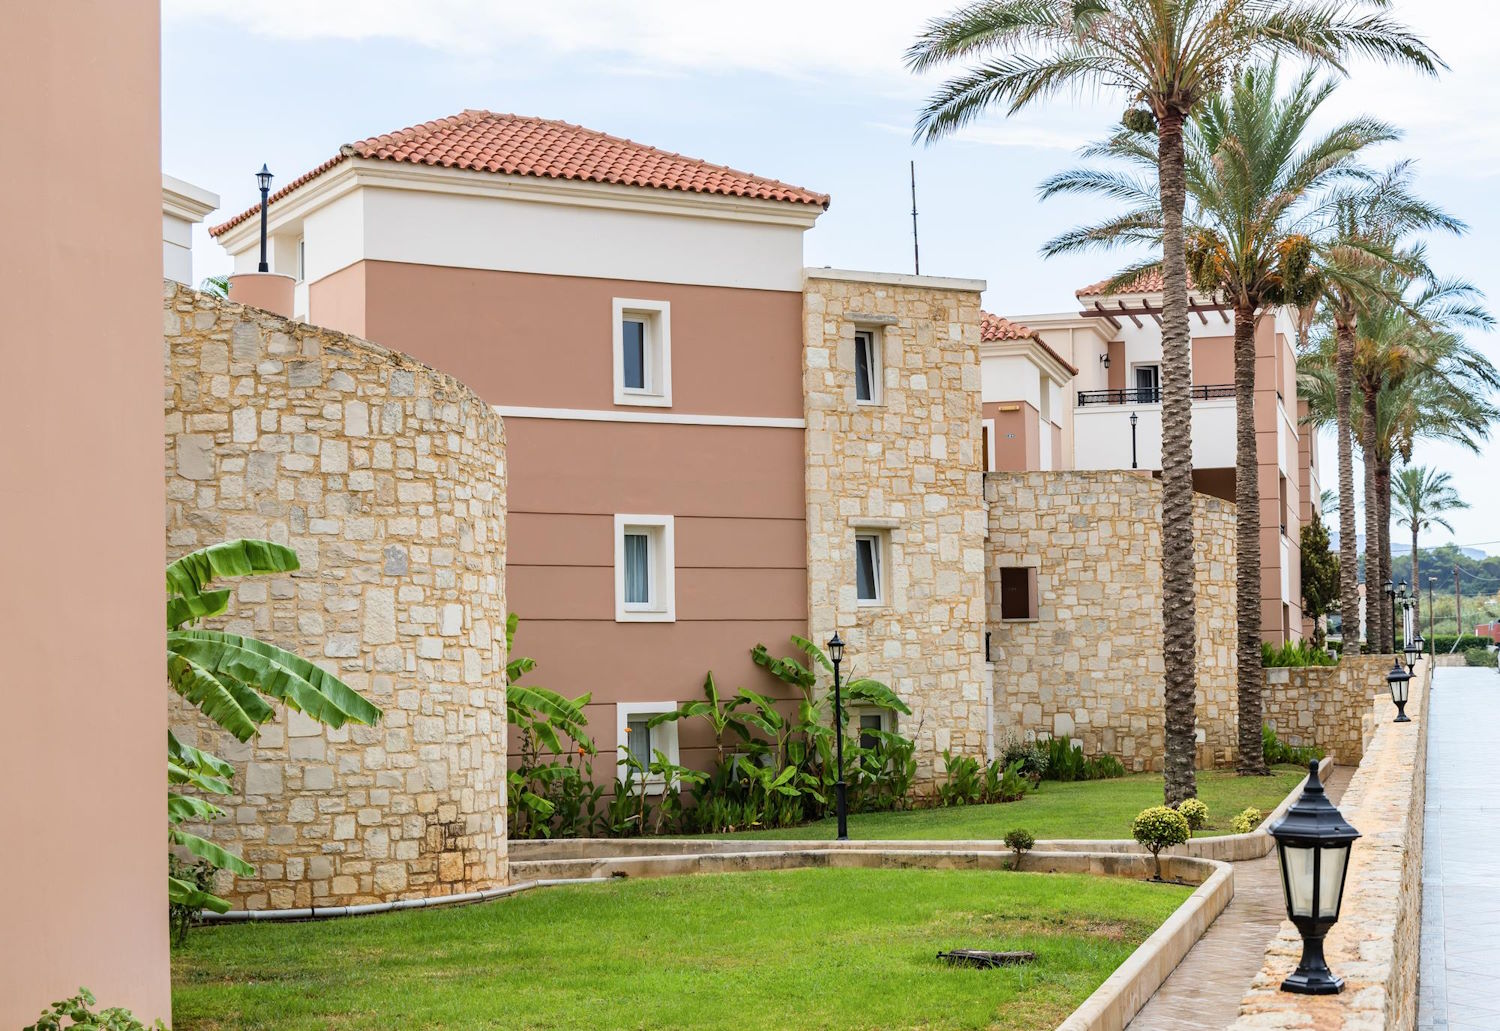 Hiszpania: Przegląd rynku nieruchomości – analiza ofert domów i mieszkań na sprzedaż